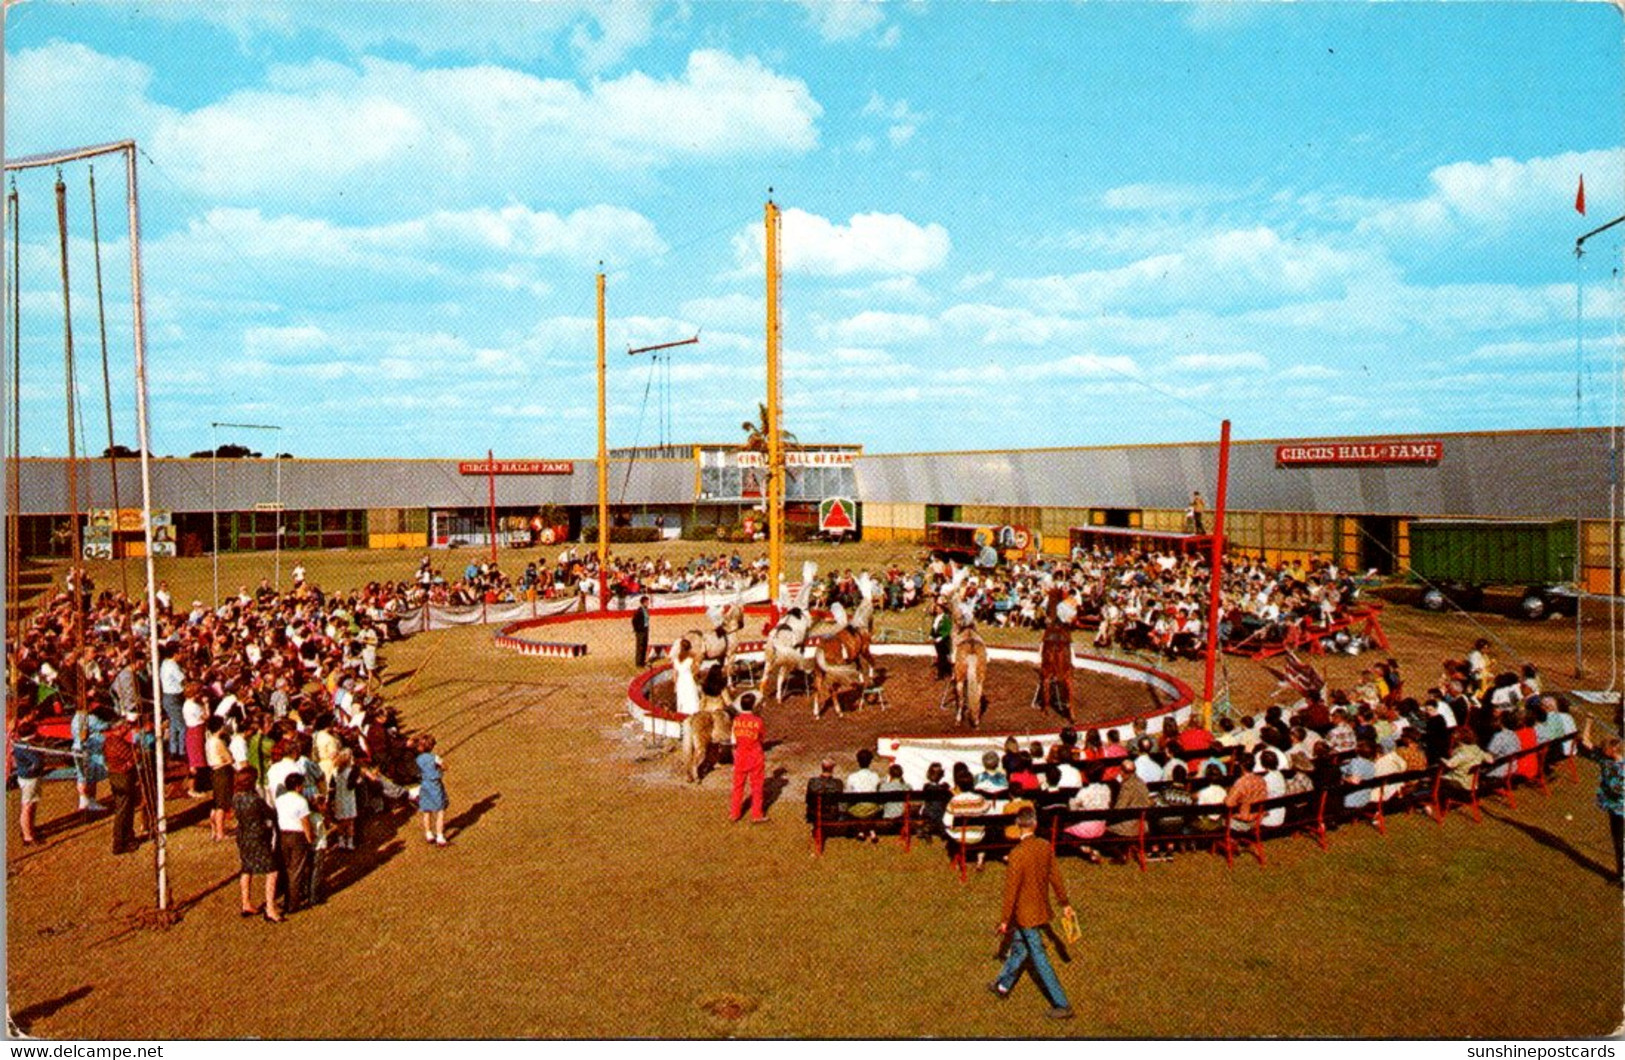 Florida Sarasota Circus Hall Of Fame - Sarasota